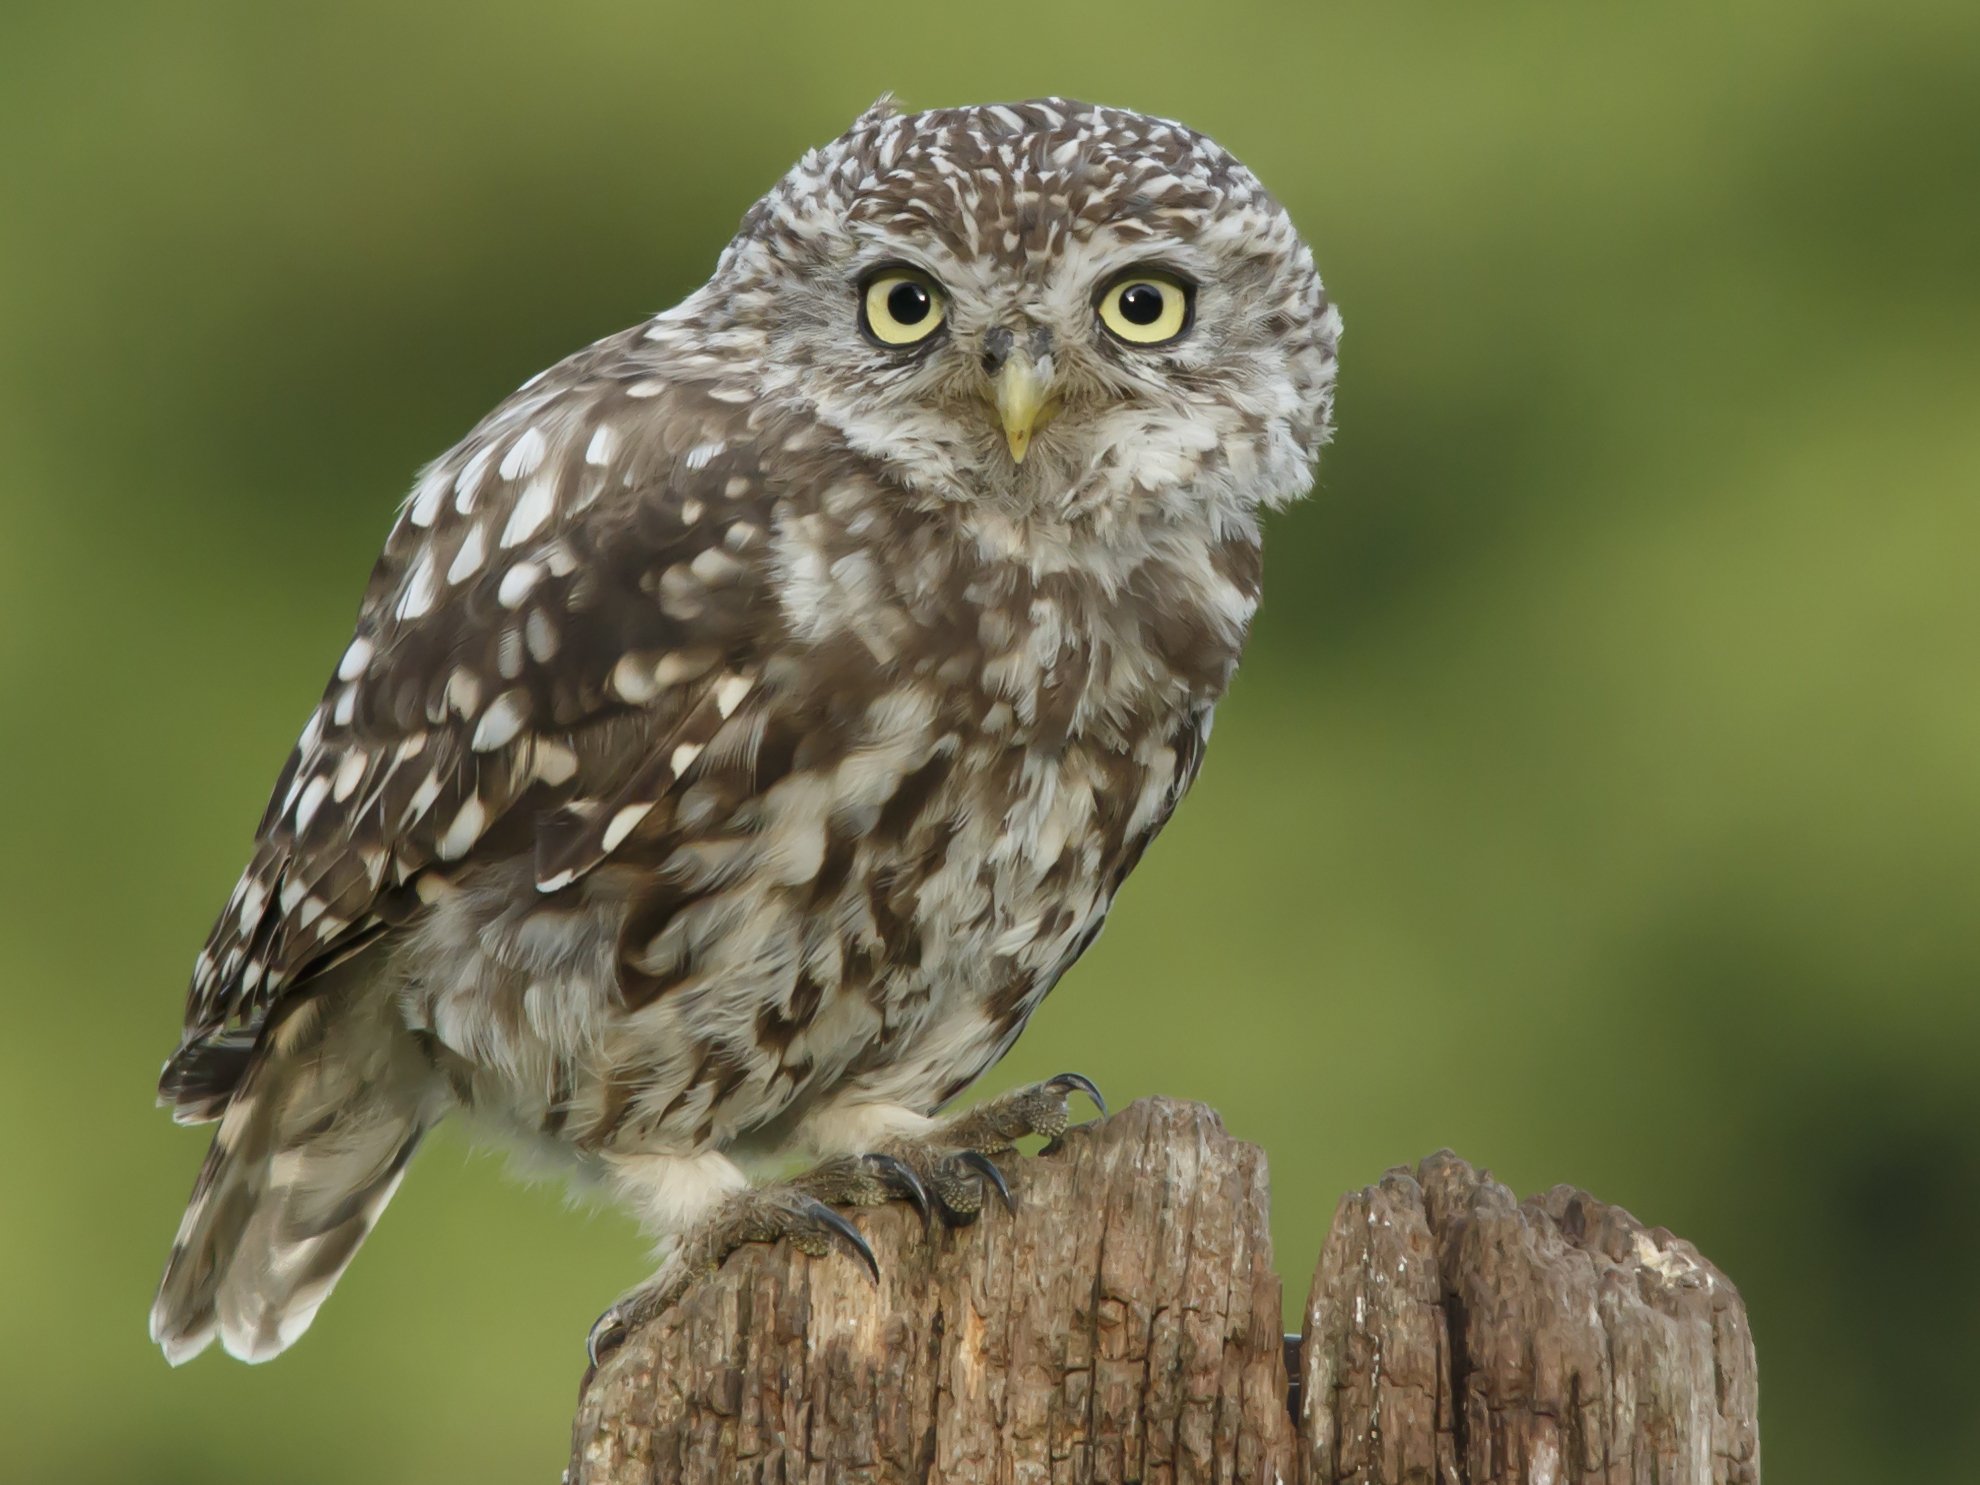 The-Cute-Juvenile-Owl-Look_Prashant-Meswani.jpg